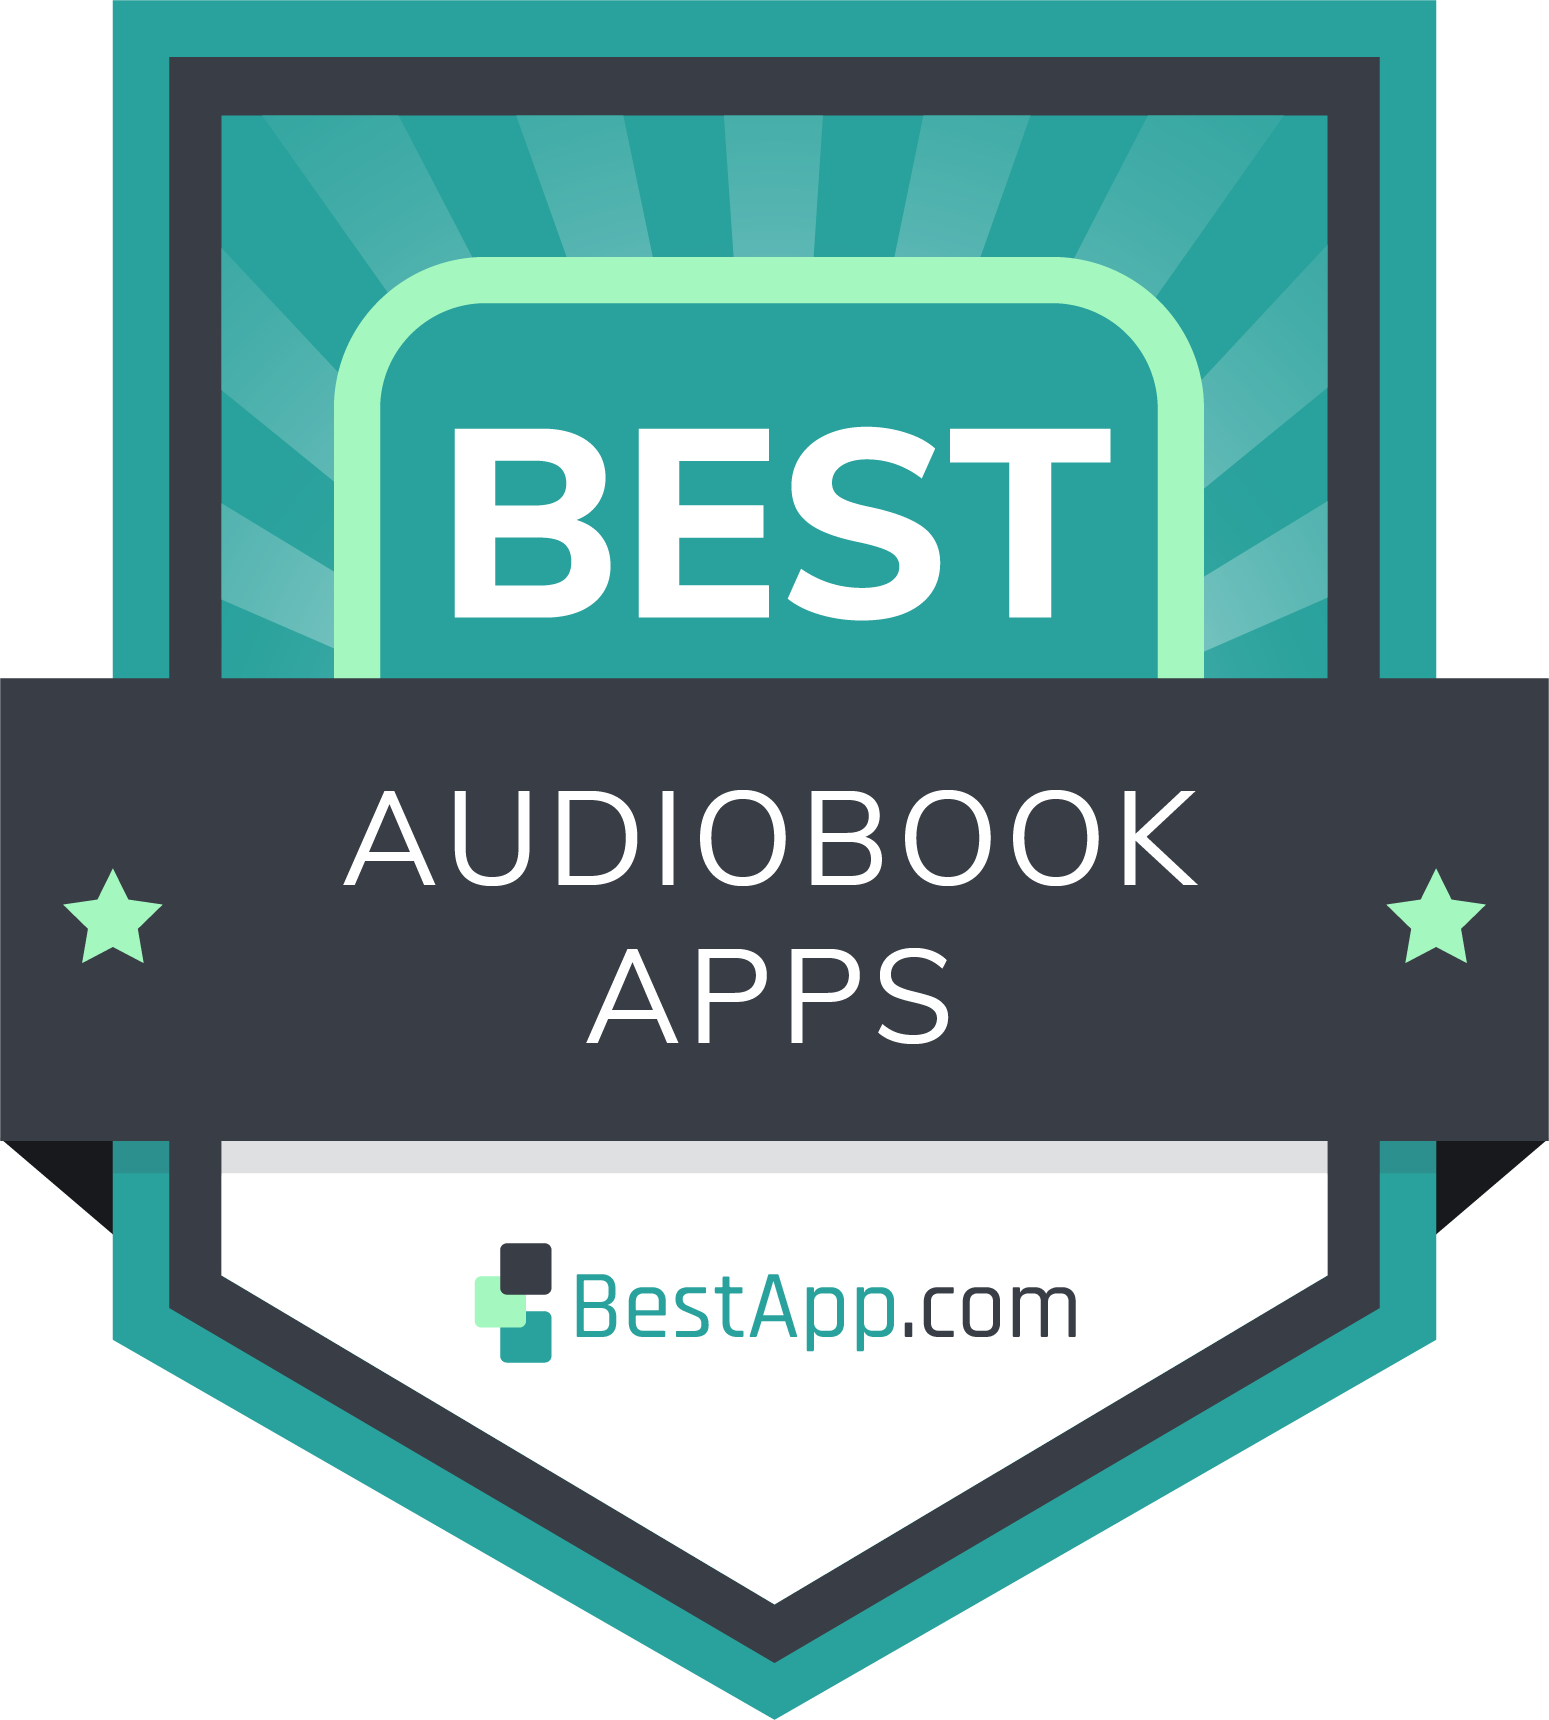 Best Audiobook Apps Badge